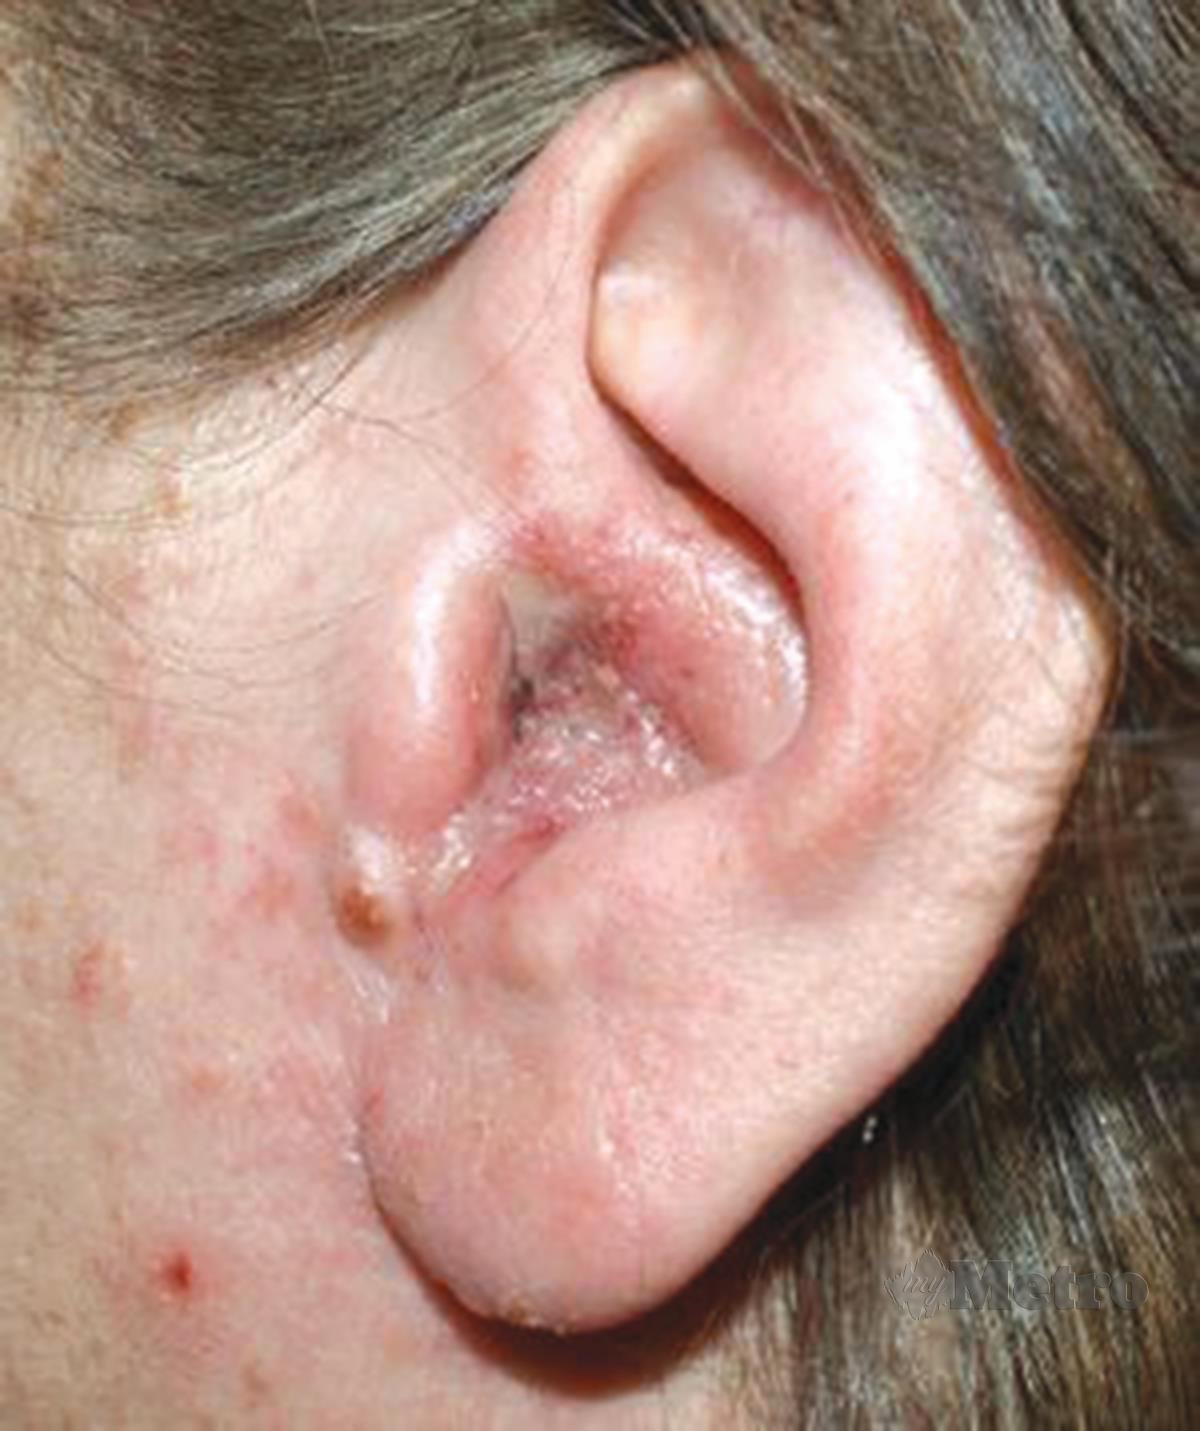 OTITIS luar akut antara masalah mungkin  dialami apabila kulit pada saluran telinga mengalami pendarahan sehingga membawa kepada jangkitan.